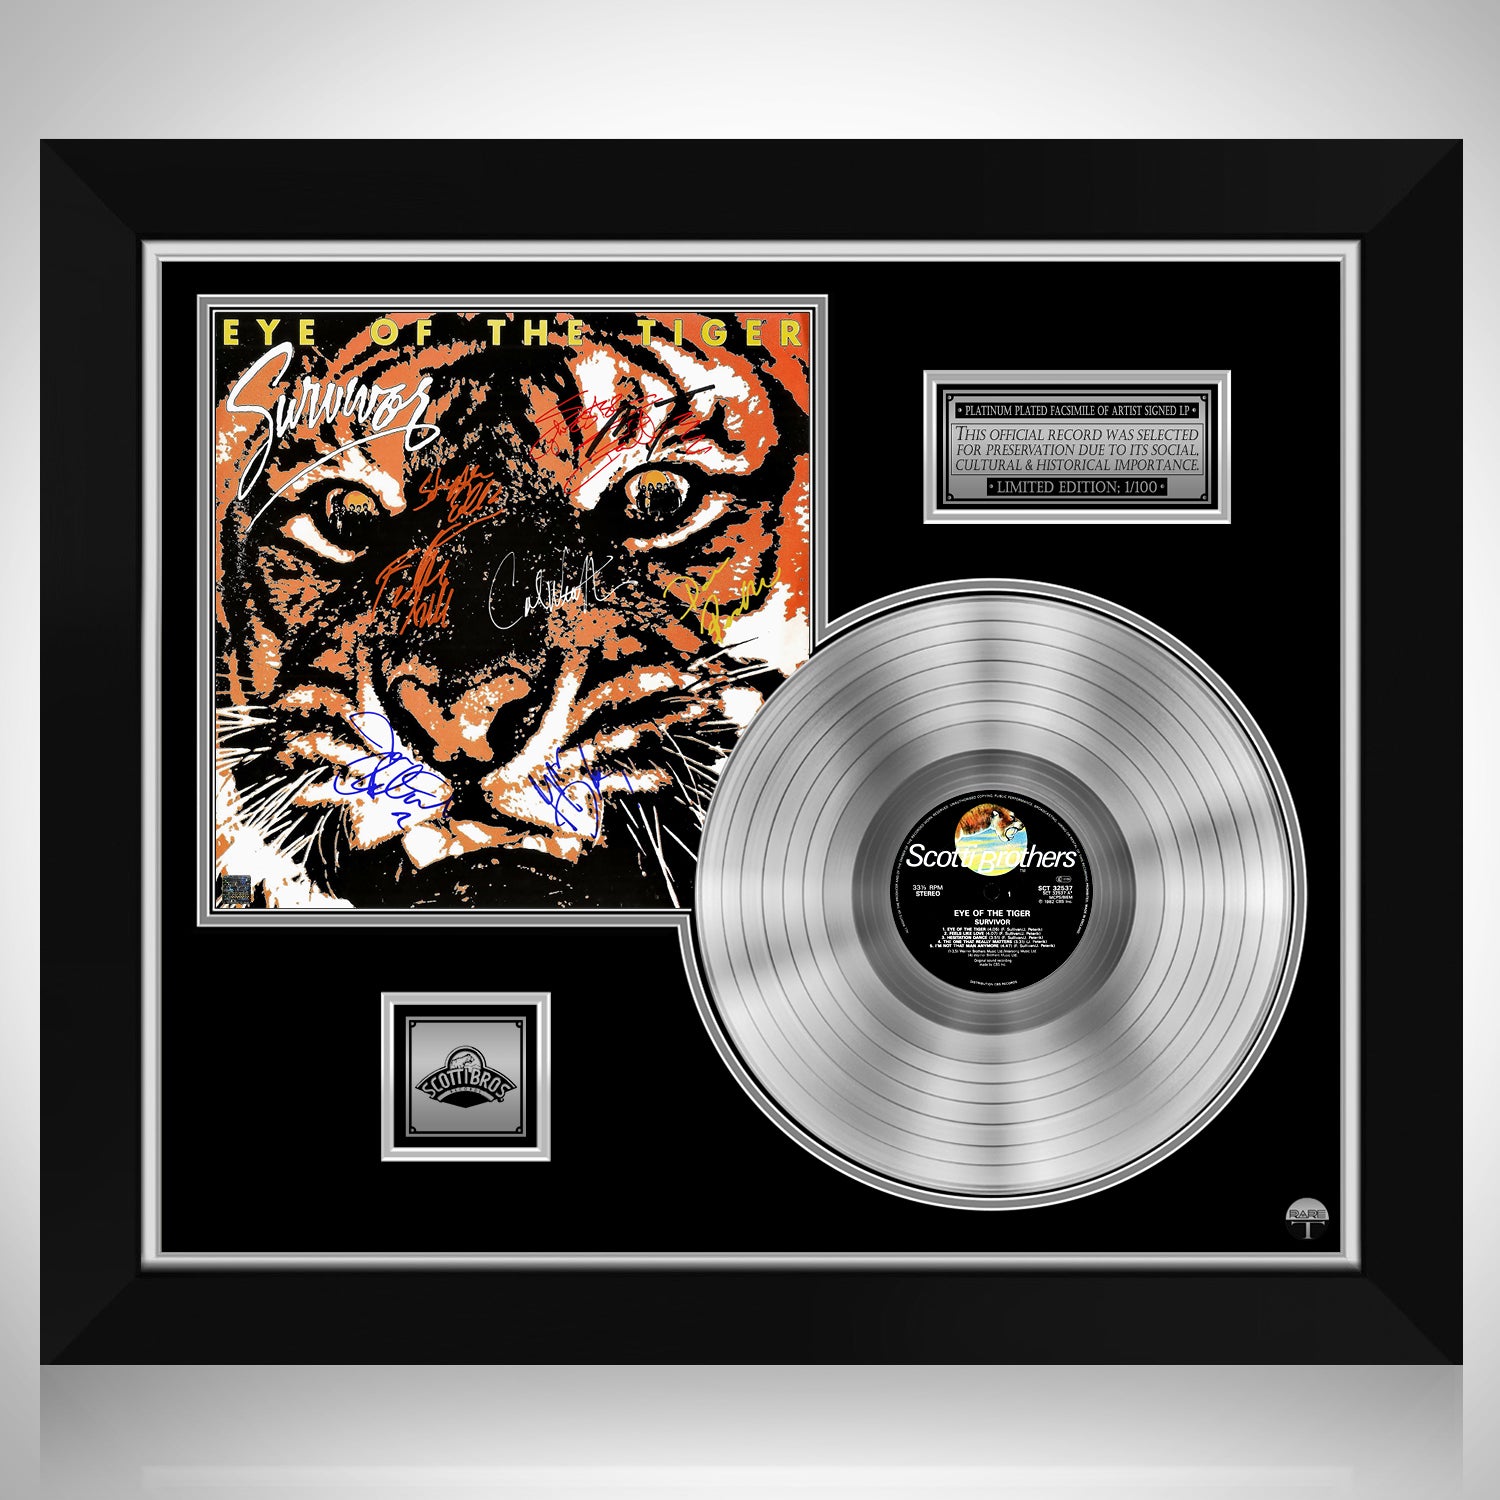 Survivor Eye of the Tiger 1982 Vinyl LP Rocky American 